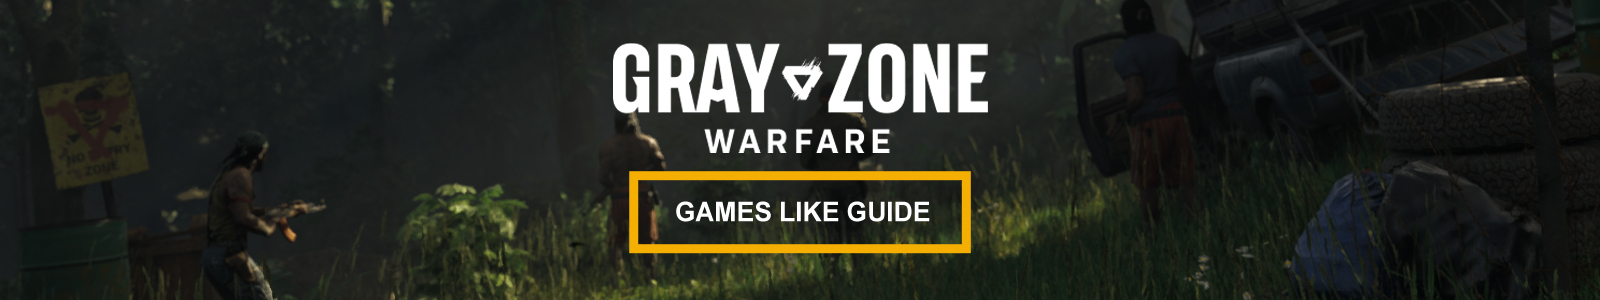 Guia de jogos similares a Gray Zone Warfare